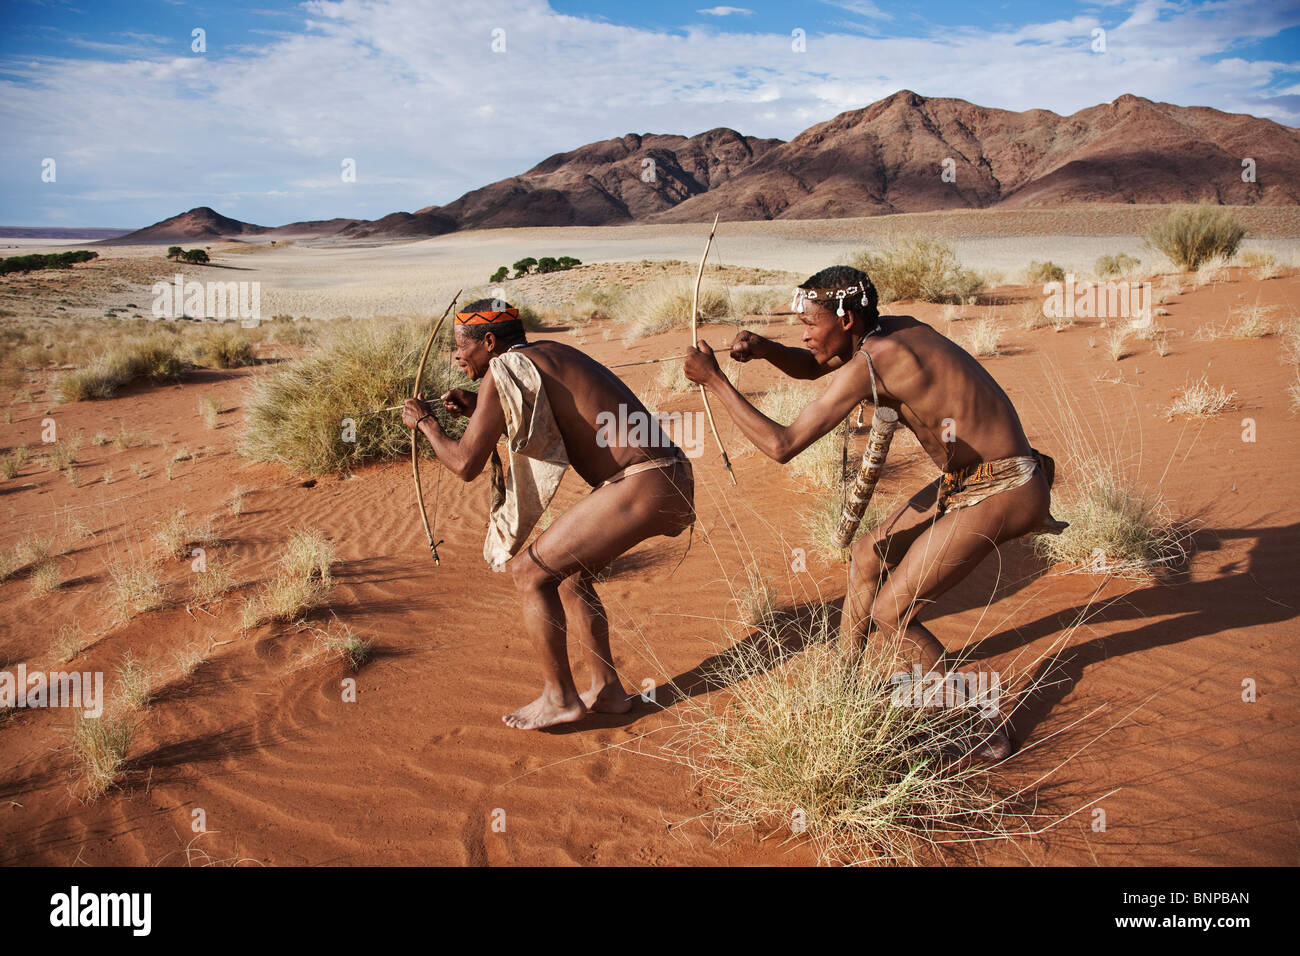 Bushman/pueblo San. San macho cazadores armados con arco y flechas tradicionales Foto de stock